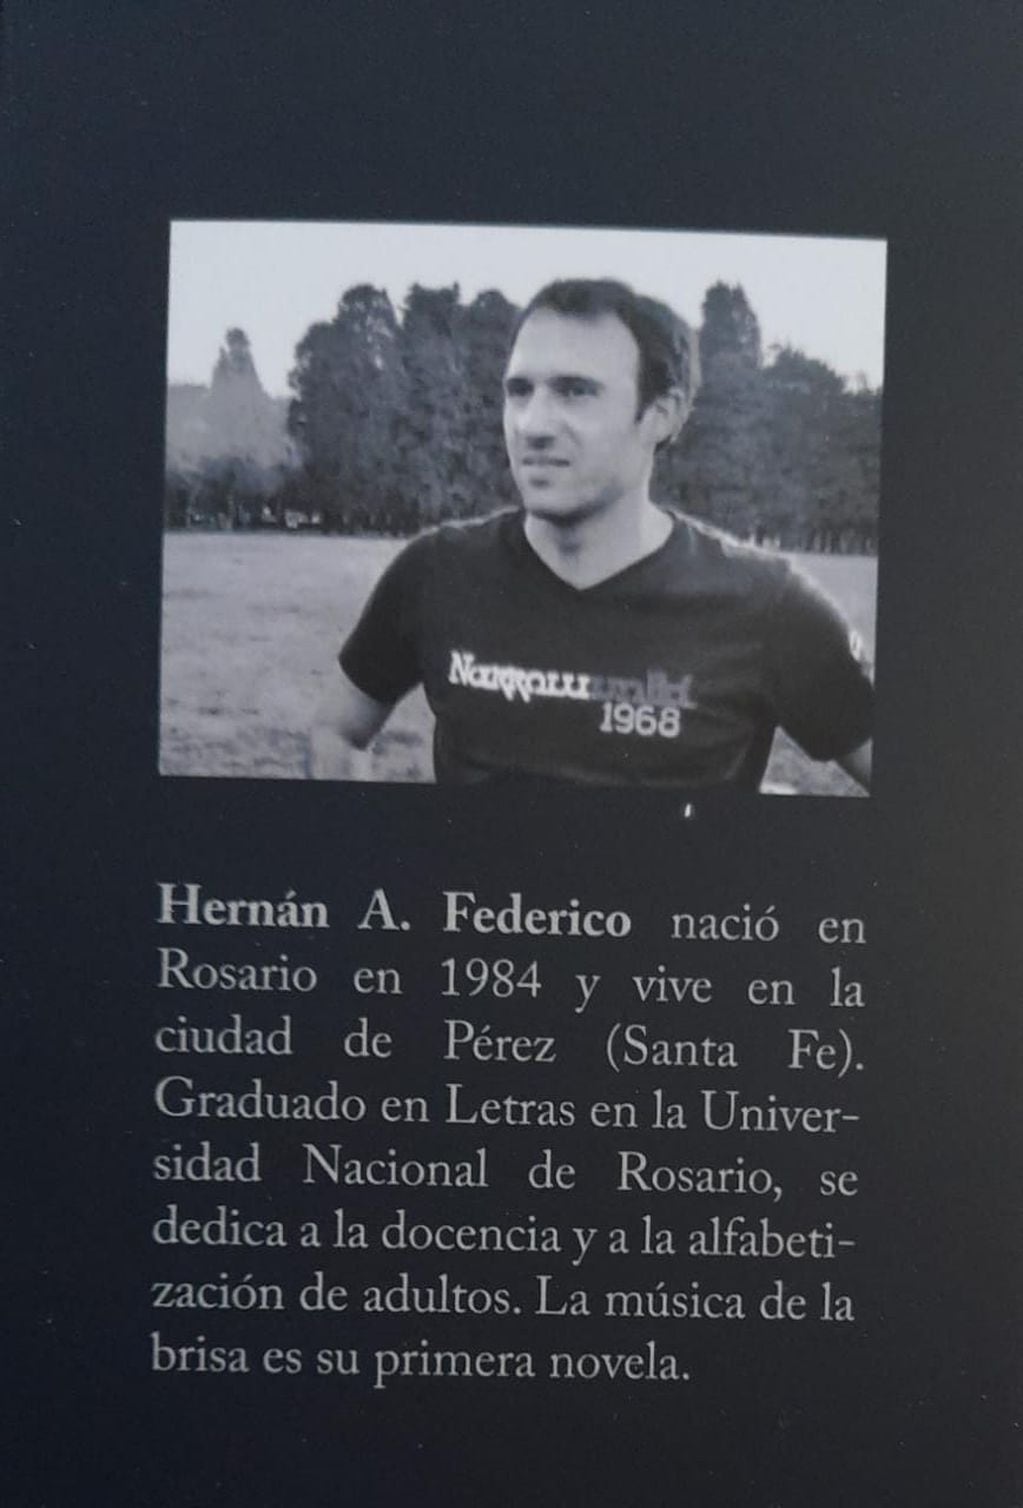 La novela de Hernán Federico “La música de la brisa” es solicitada por muchos vecinos de Pérez